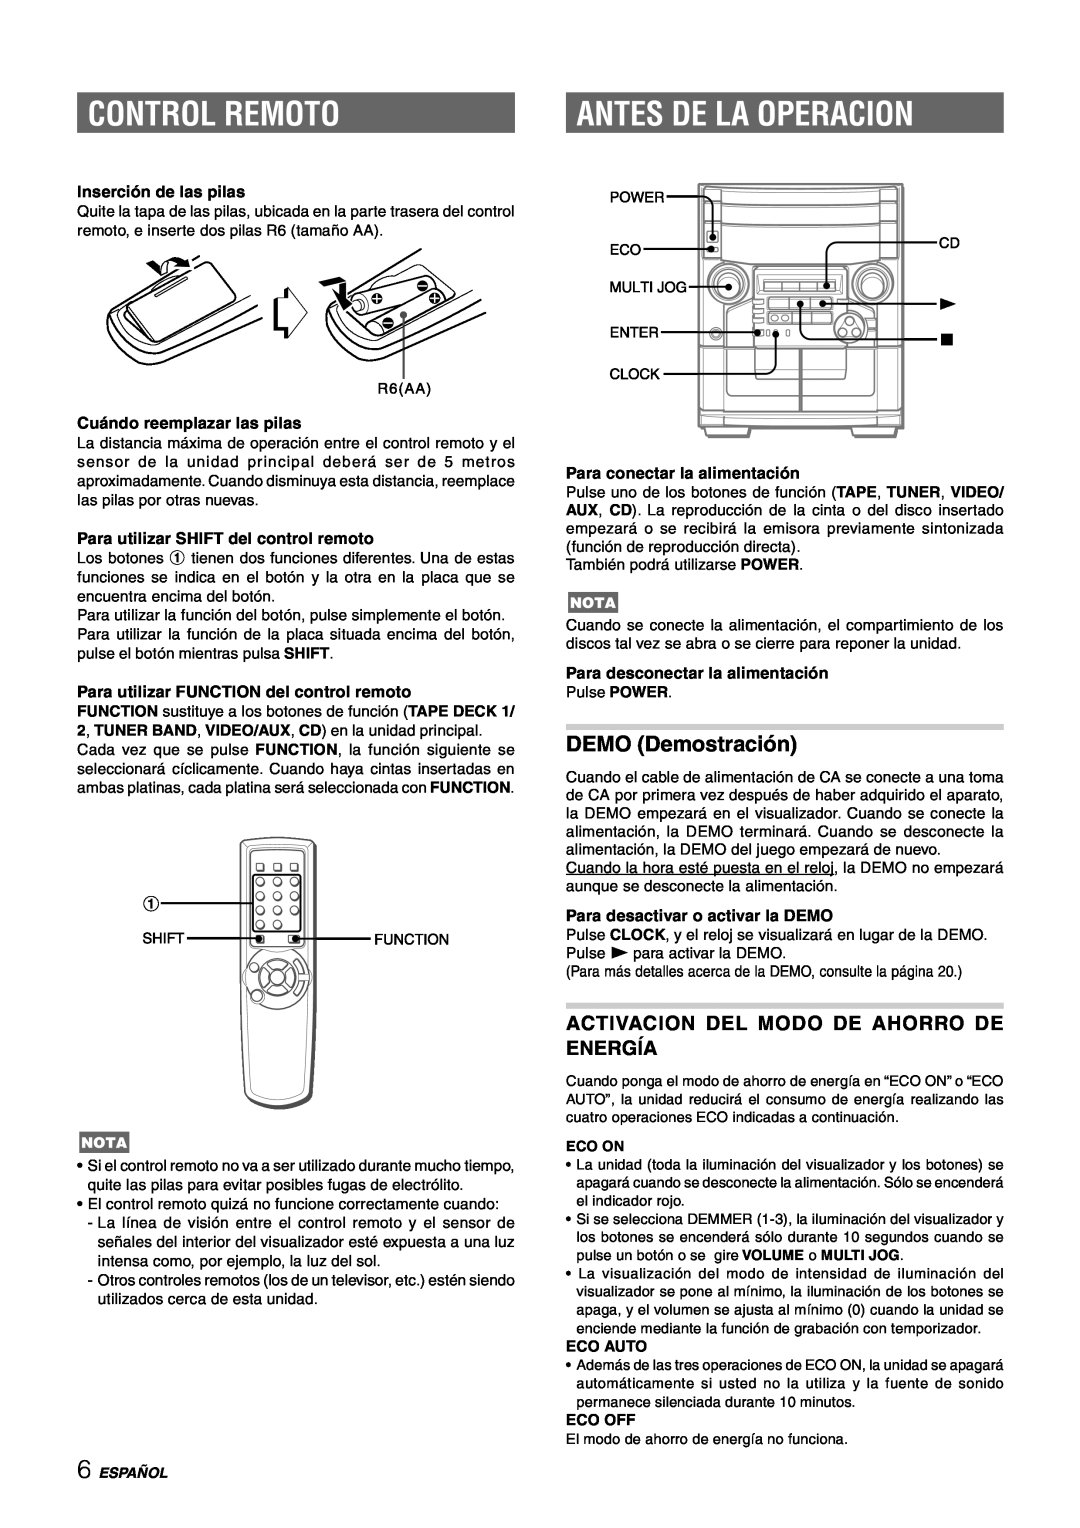 Aiwa CX-NAJ54 Control Remoto, Antes De La Operacion, DEMO Demostración, Activacion Del Modo De Ahorro De Energía, Español 